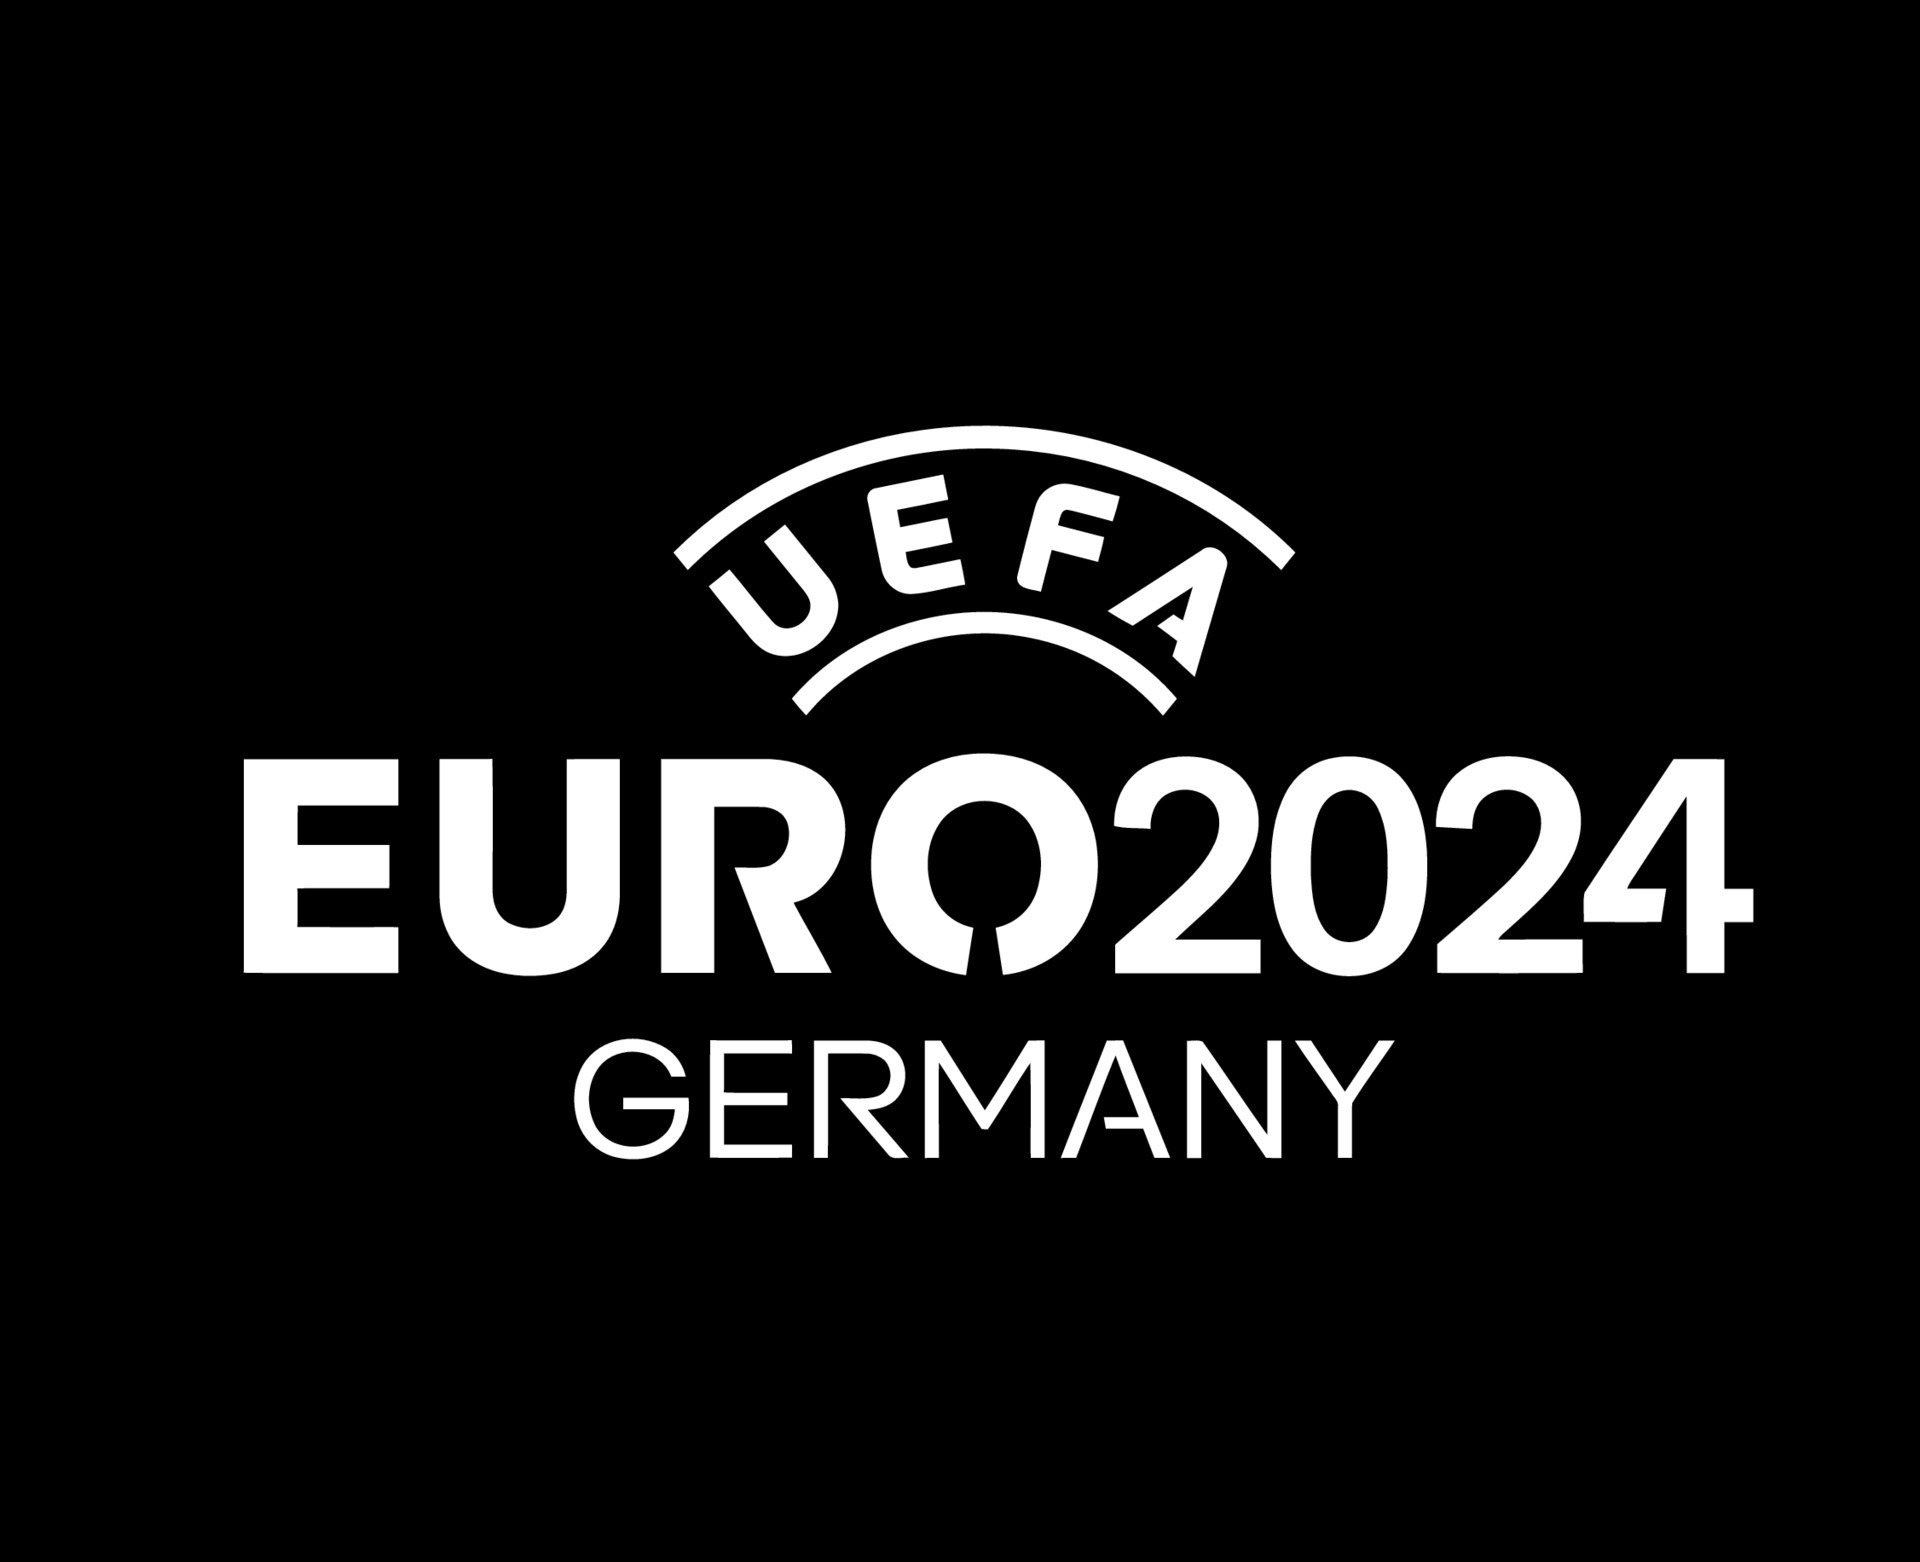 Euro 2024 Germany Symbol logo official Name White European